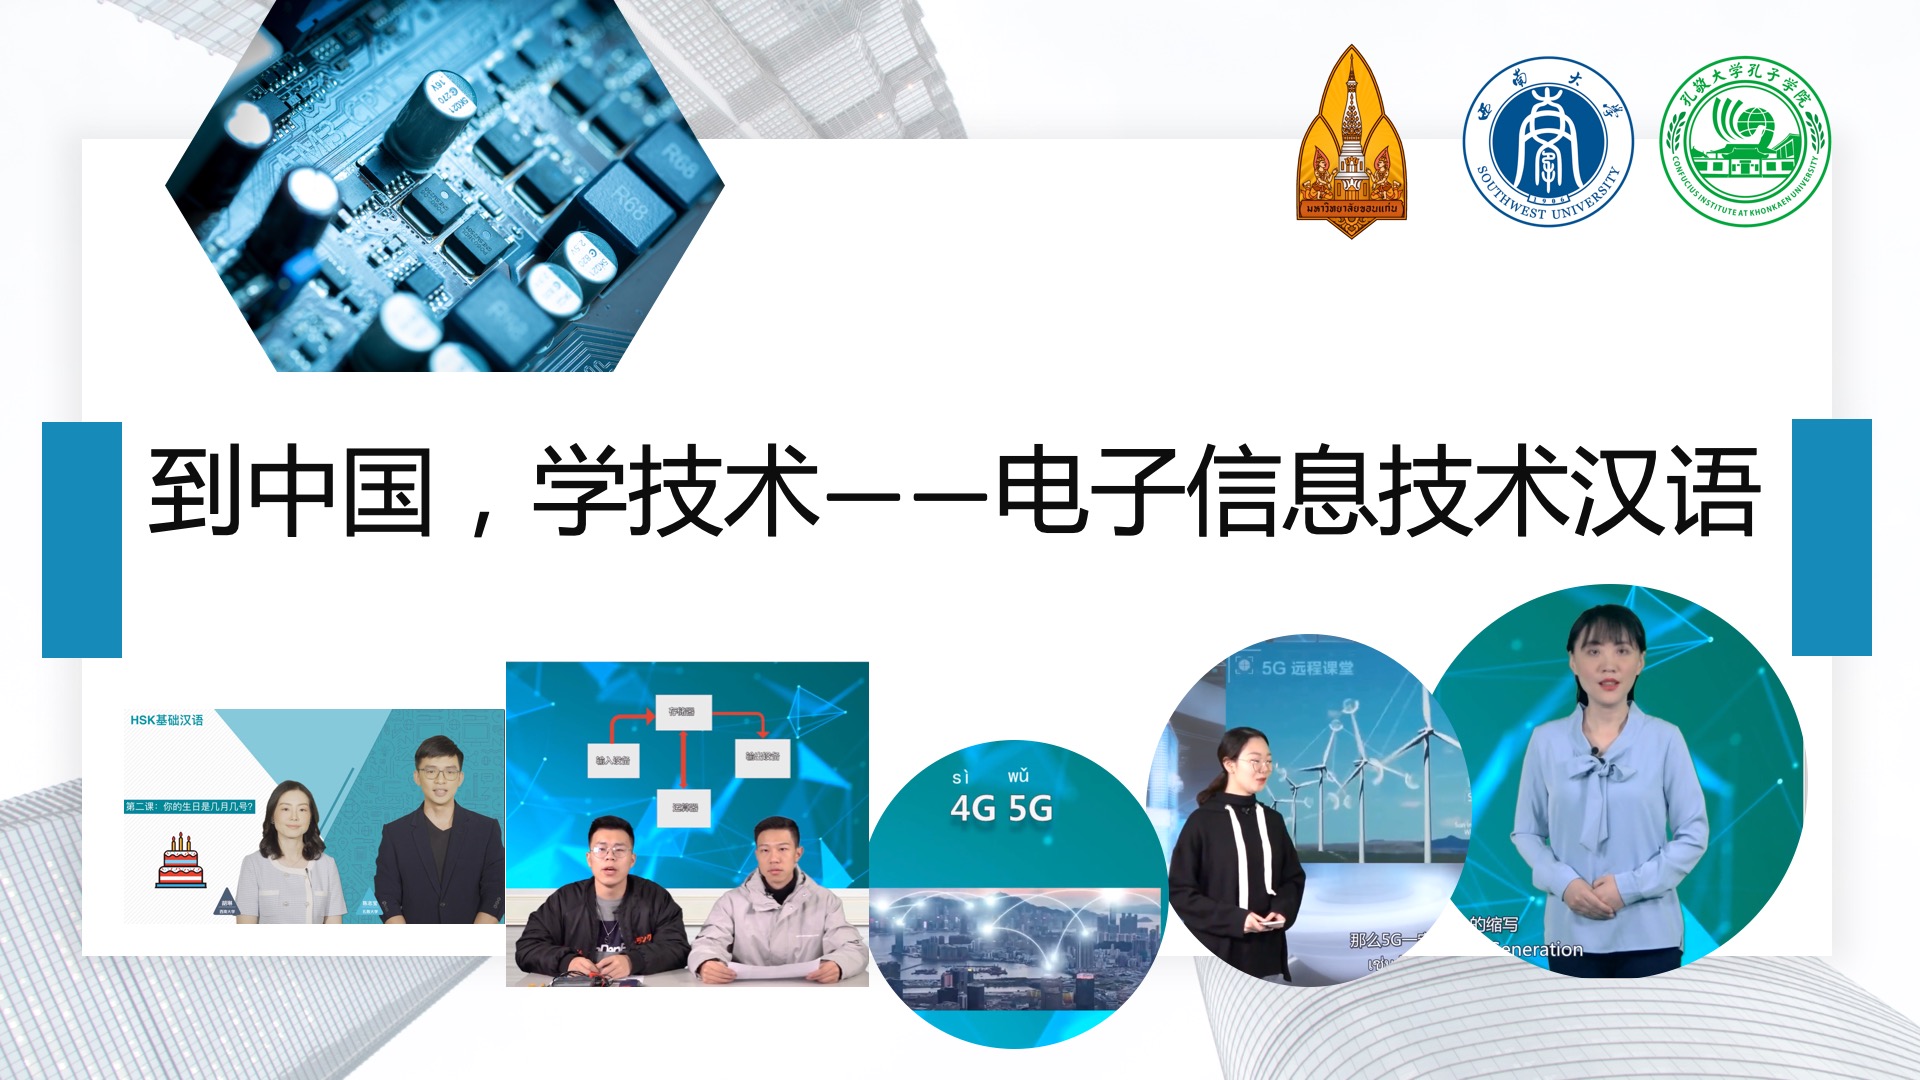 En Chine, apprendre la technologie Cours de chinois professionnel- Chinois sur les technologies de l'information électronique